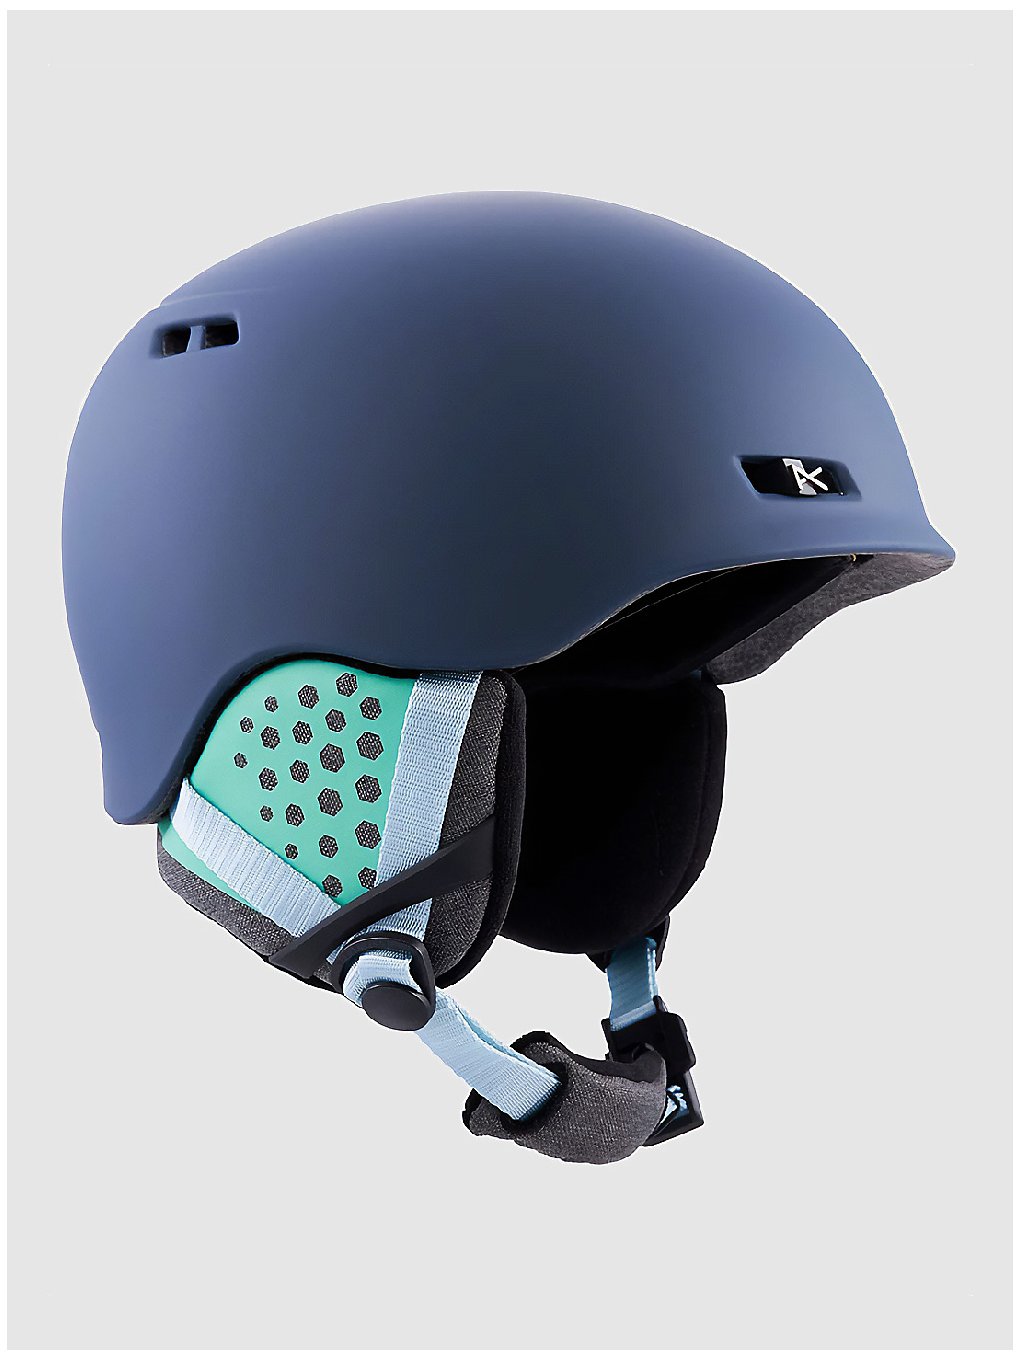 Anon Rodan MIPS Helm blauw